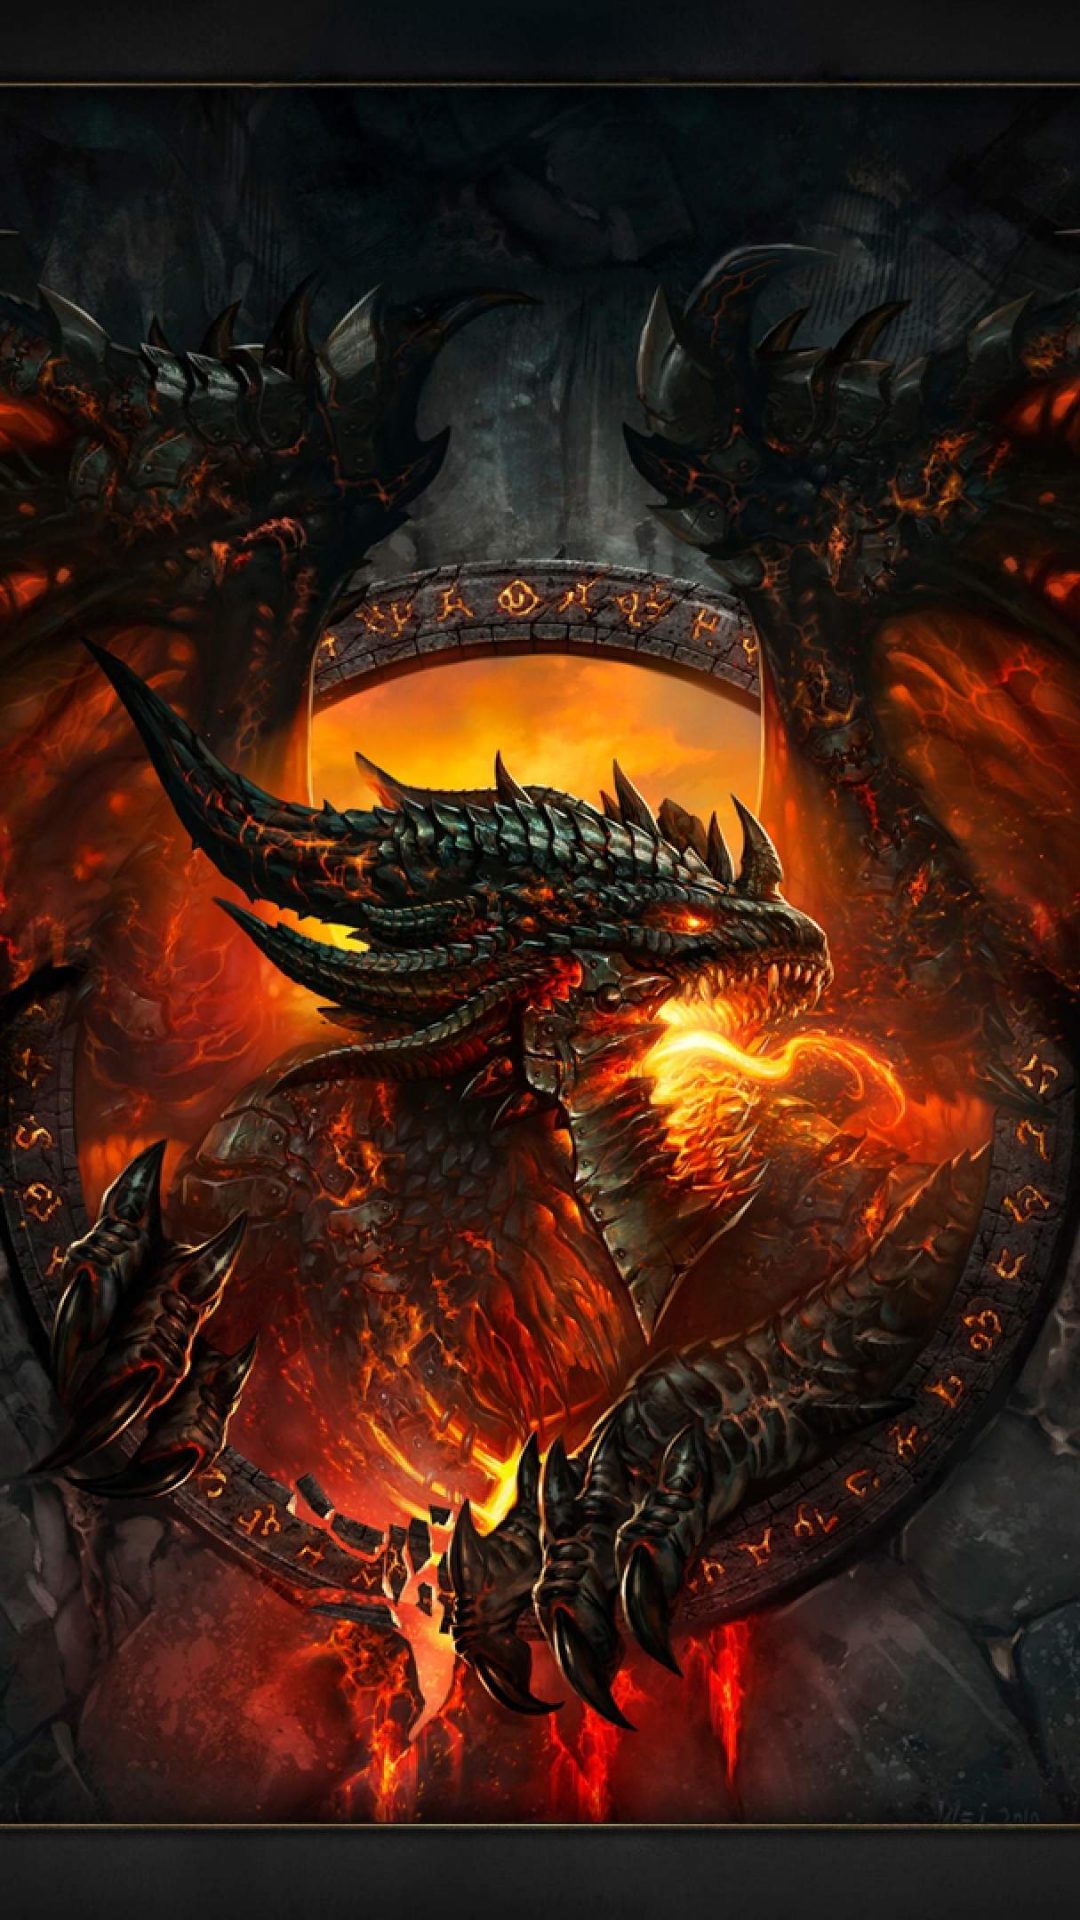 fond d'écran iphone world of warcraft,dragon,démon,oeuvre de cg,personnage fictif,créature mythique